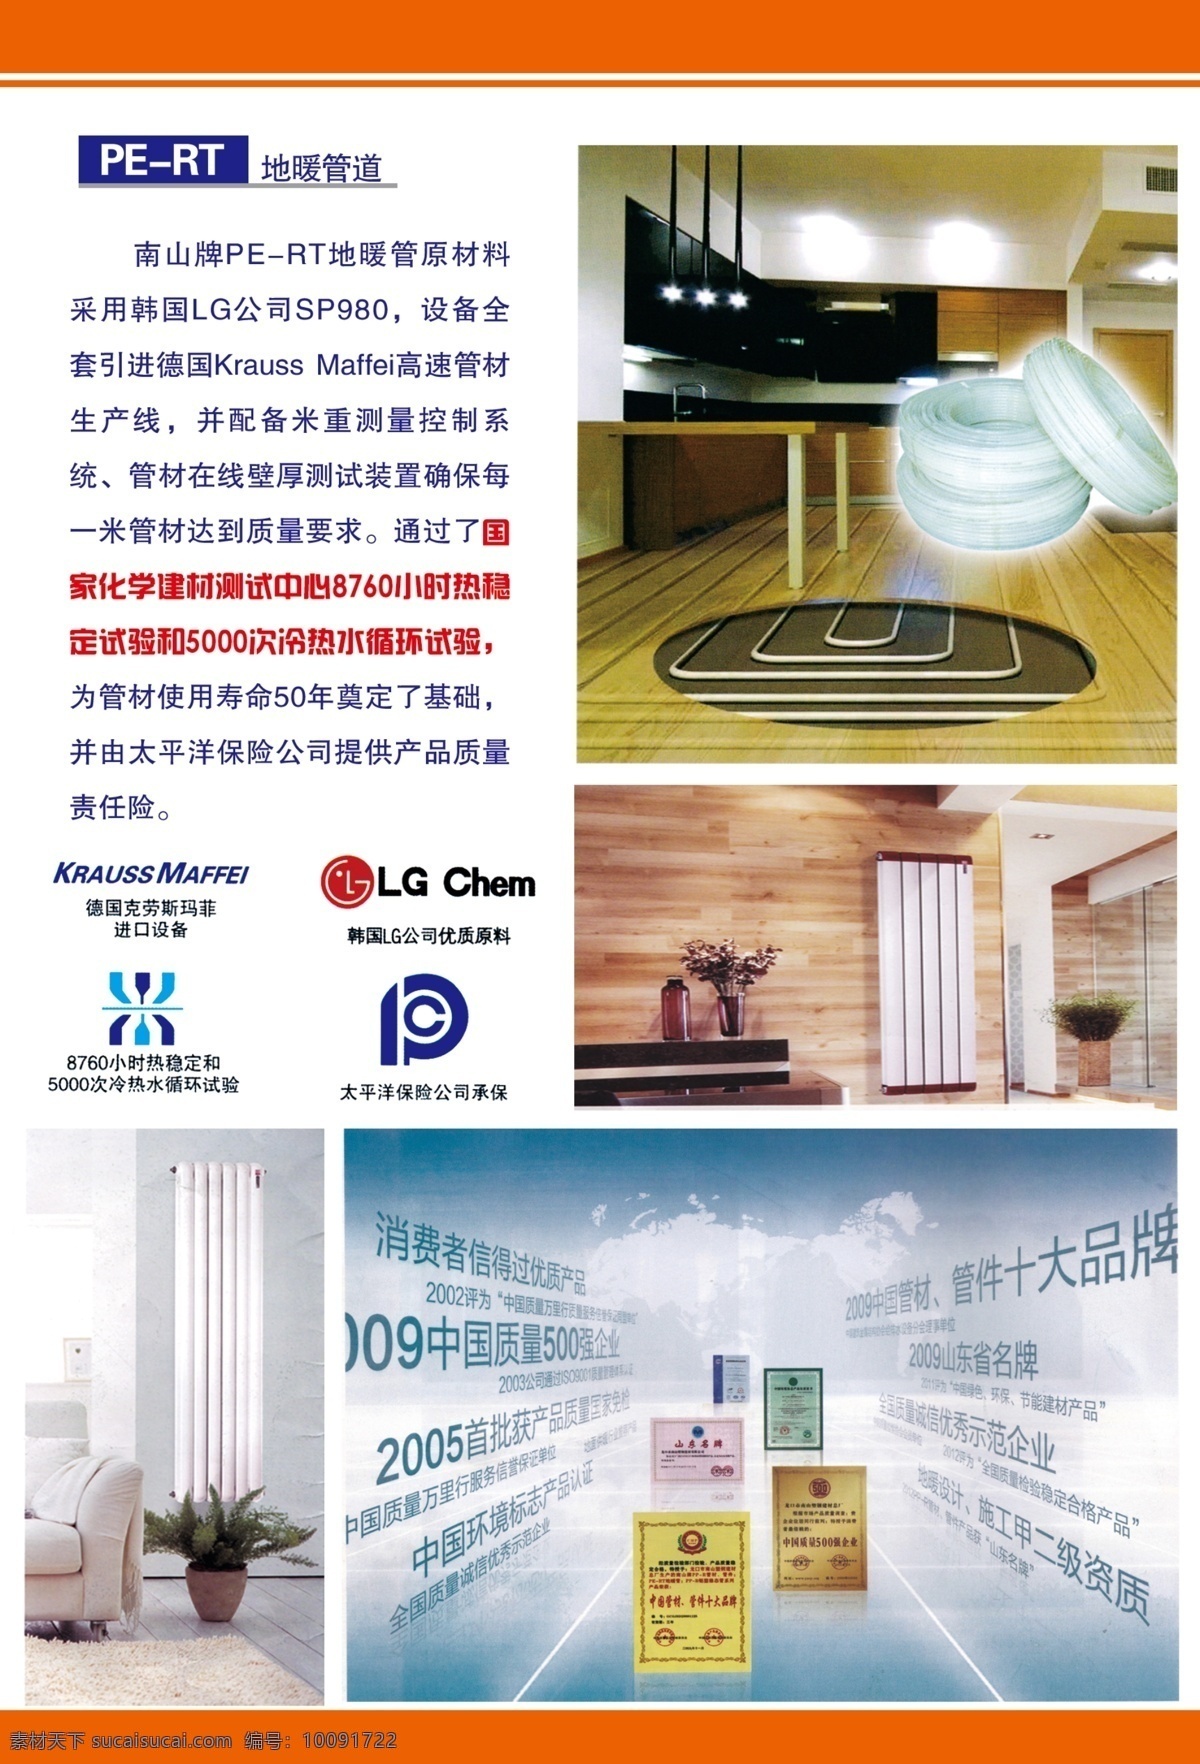 地暖管道 进口设备 韩国lg 太平洋保险公司 热稳定 广告设计模板 源文件